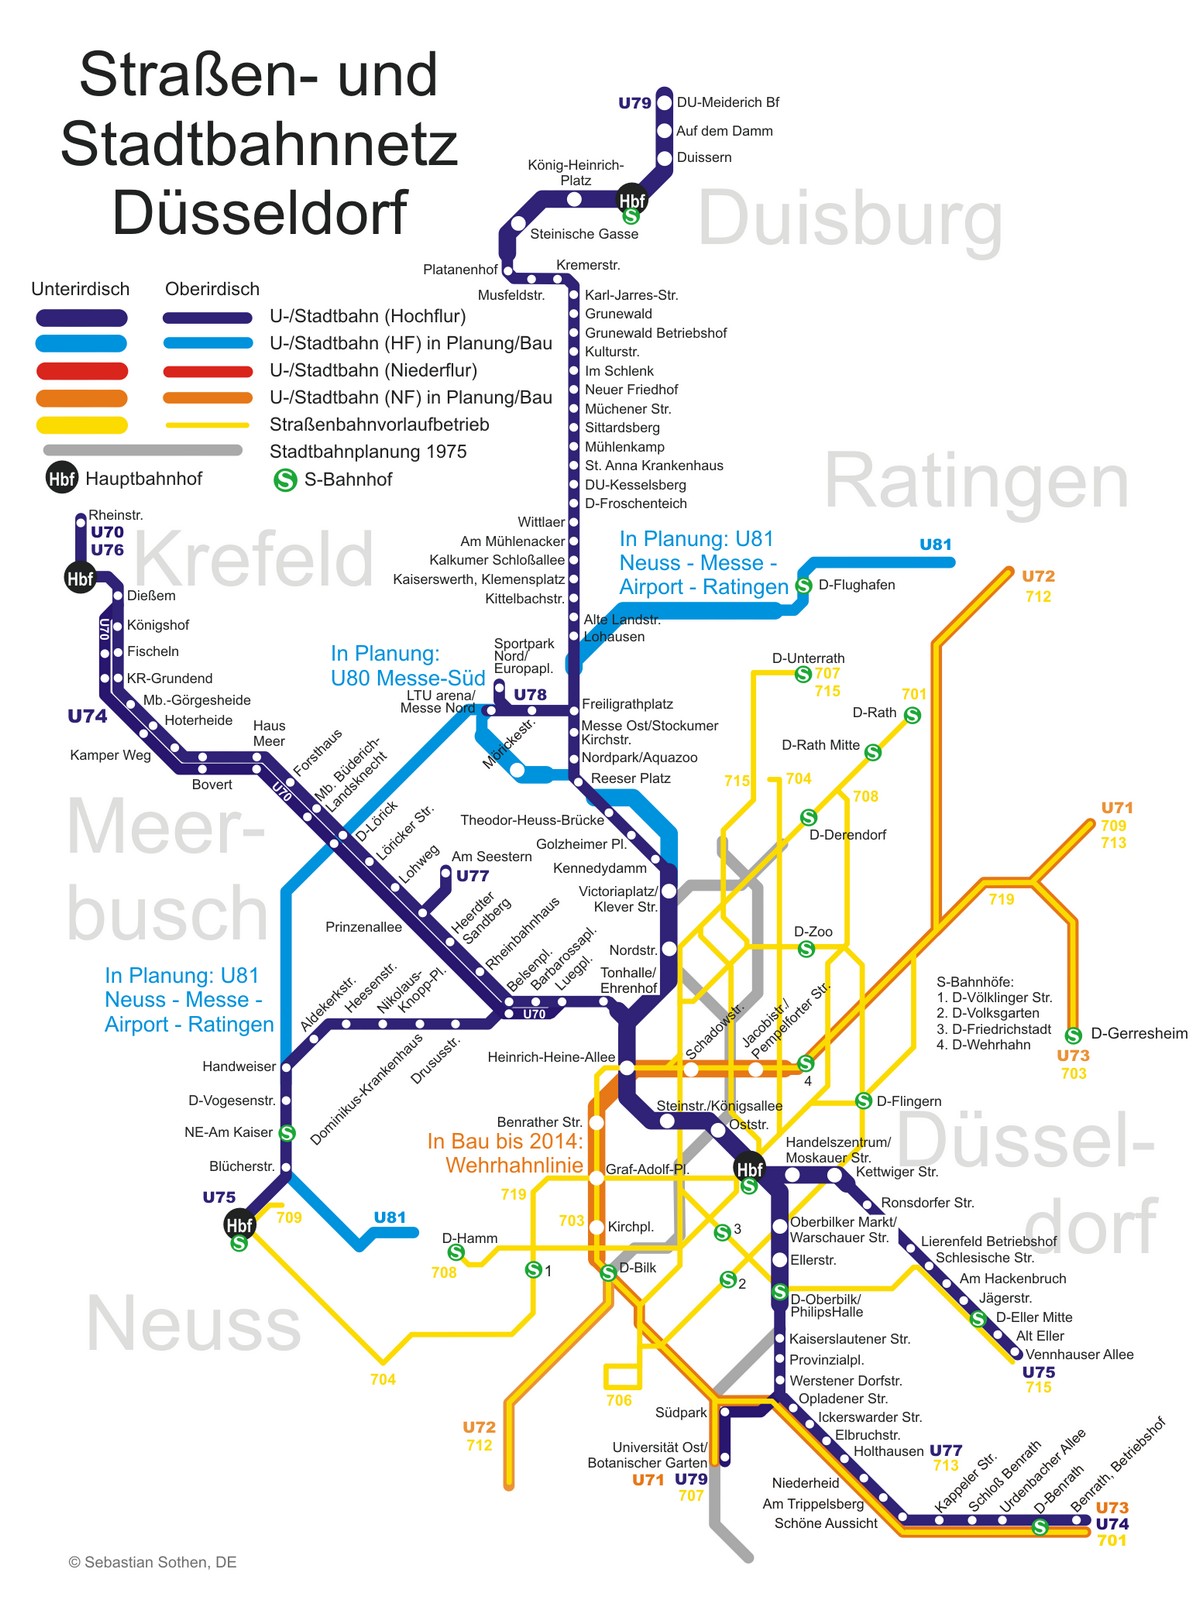 solo travel dusseldorf